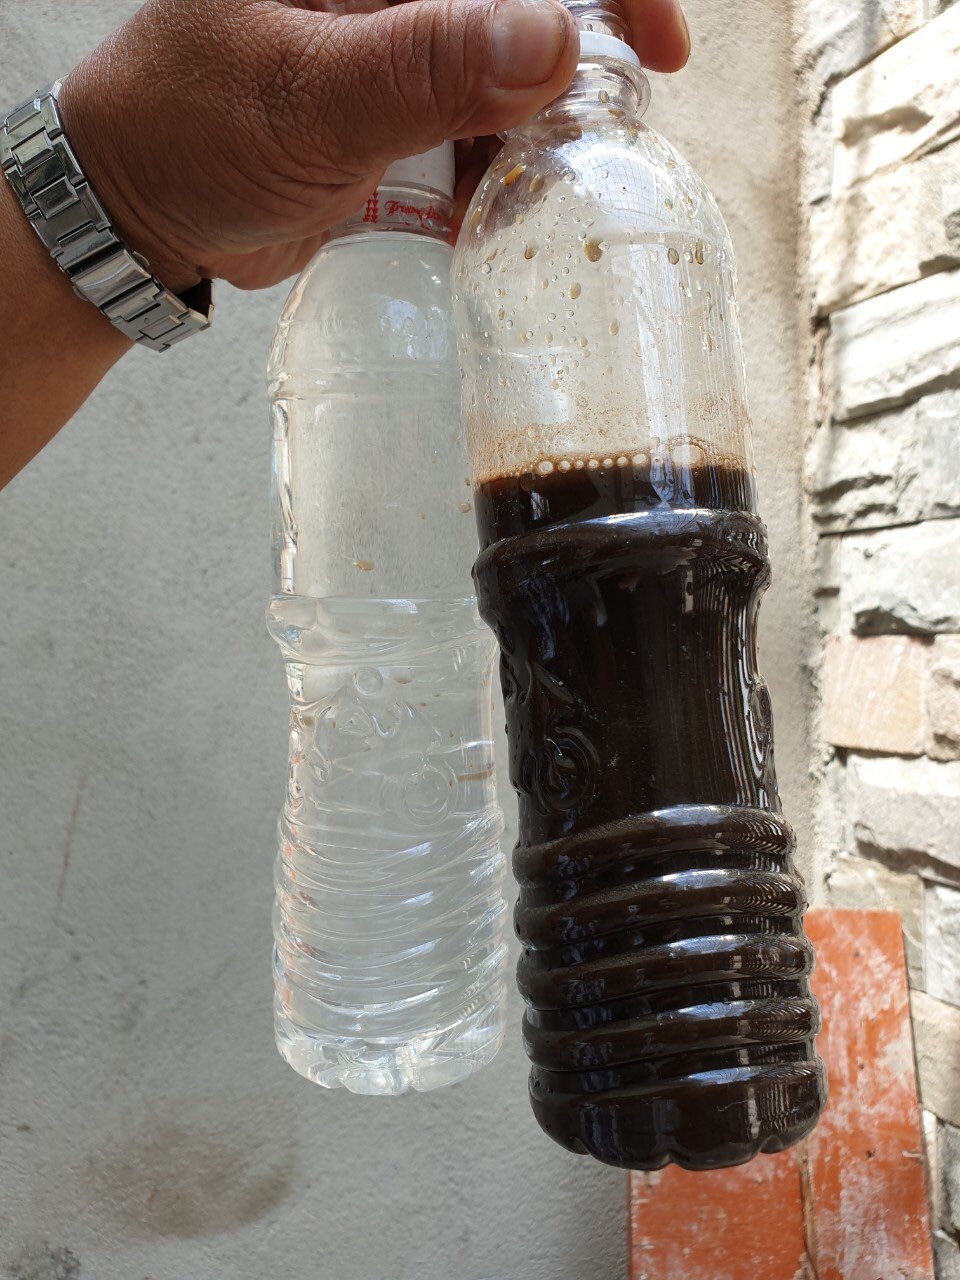 Bên phải là chai nước thải tại KCN Sóng Thần 2 chưa được xử lý. Và, chai bên trái là nước thải đã qua xử lý, đạt tiêu chuẩn 02 của Bộ Y tế, thành nước sinh hoạt có thể tái sử dụng. Ảnh: H.H